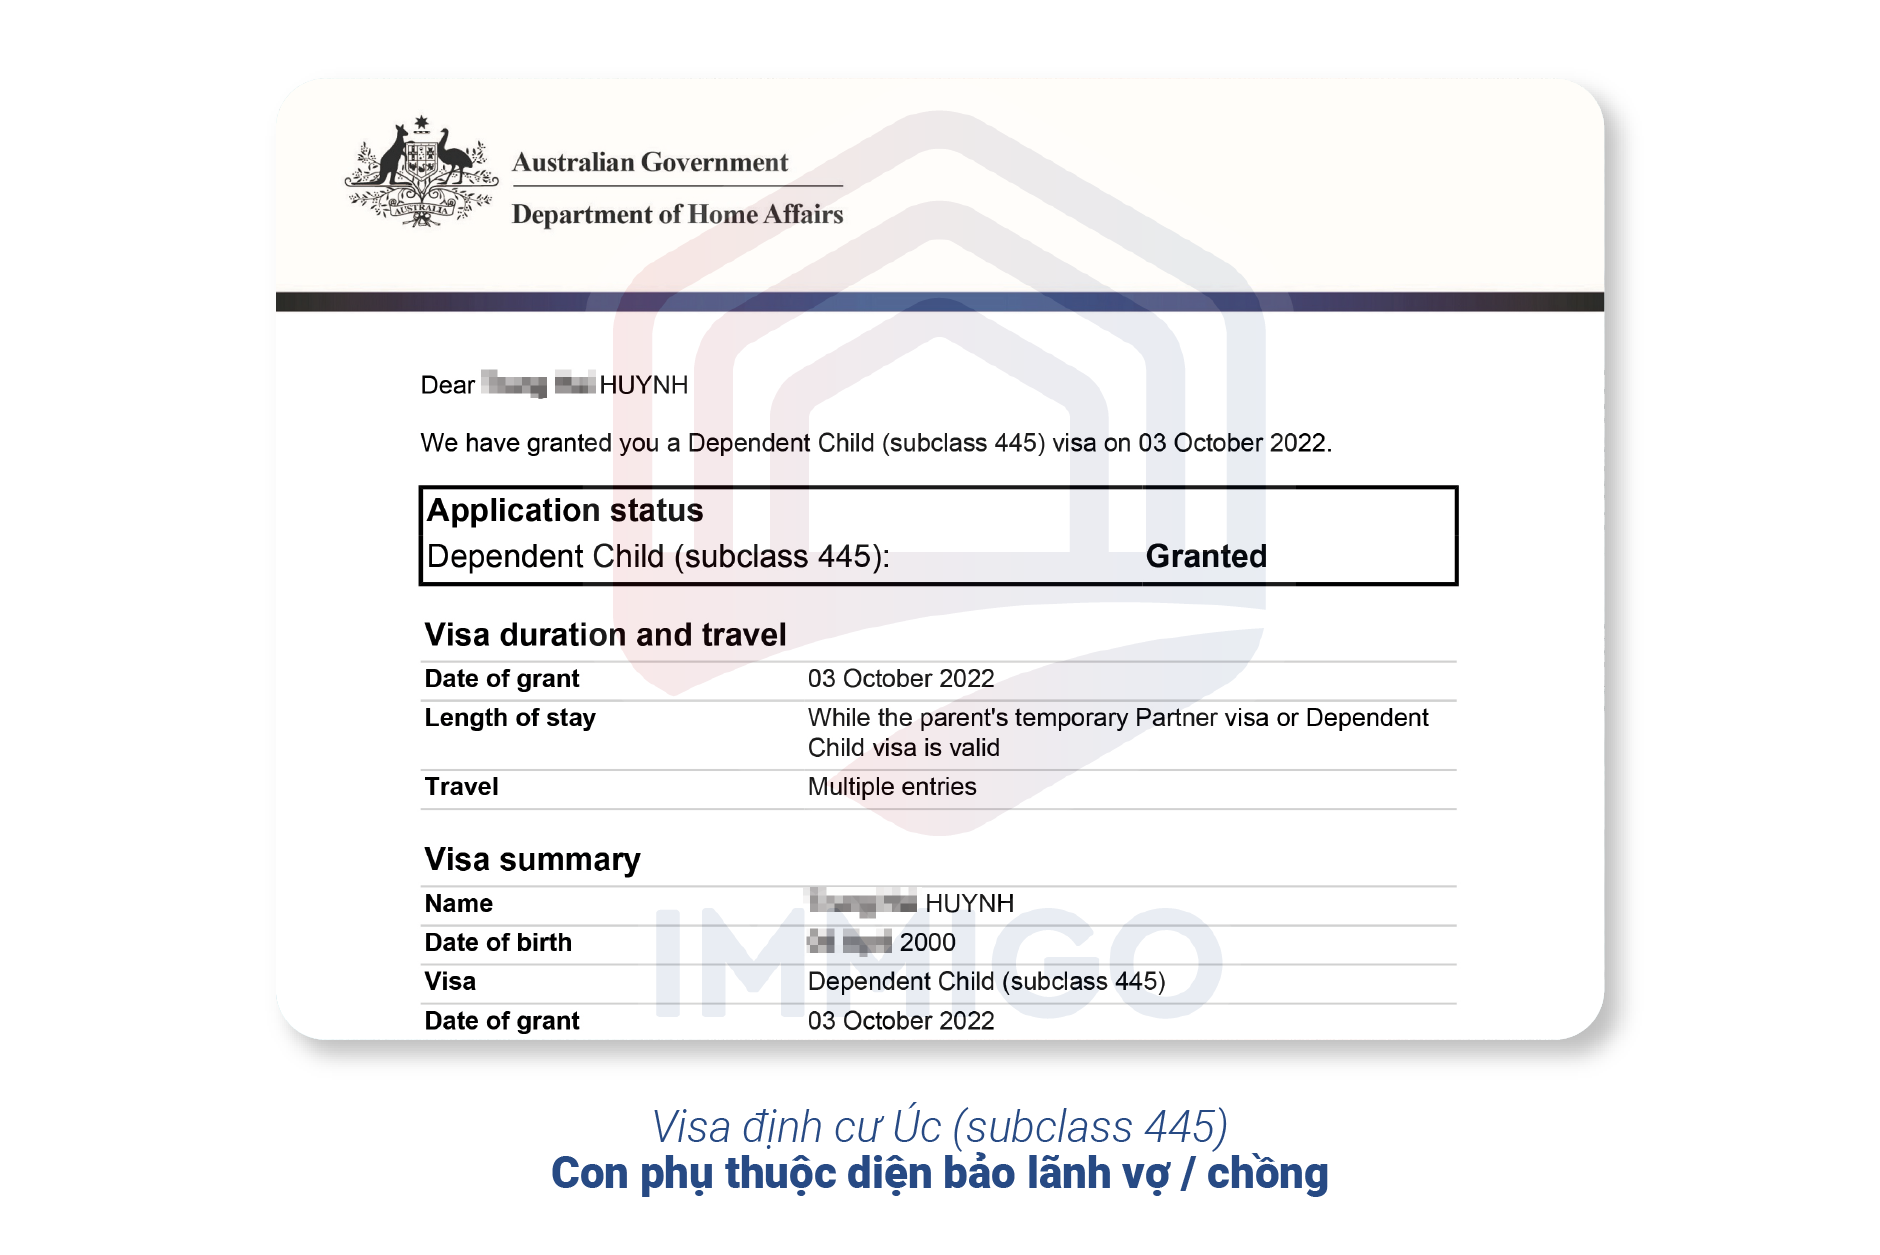 Visa định cư Úc subclass 445 (diện con phụ thuộc)